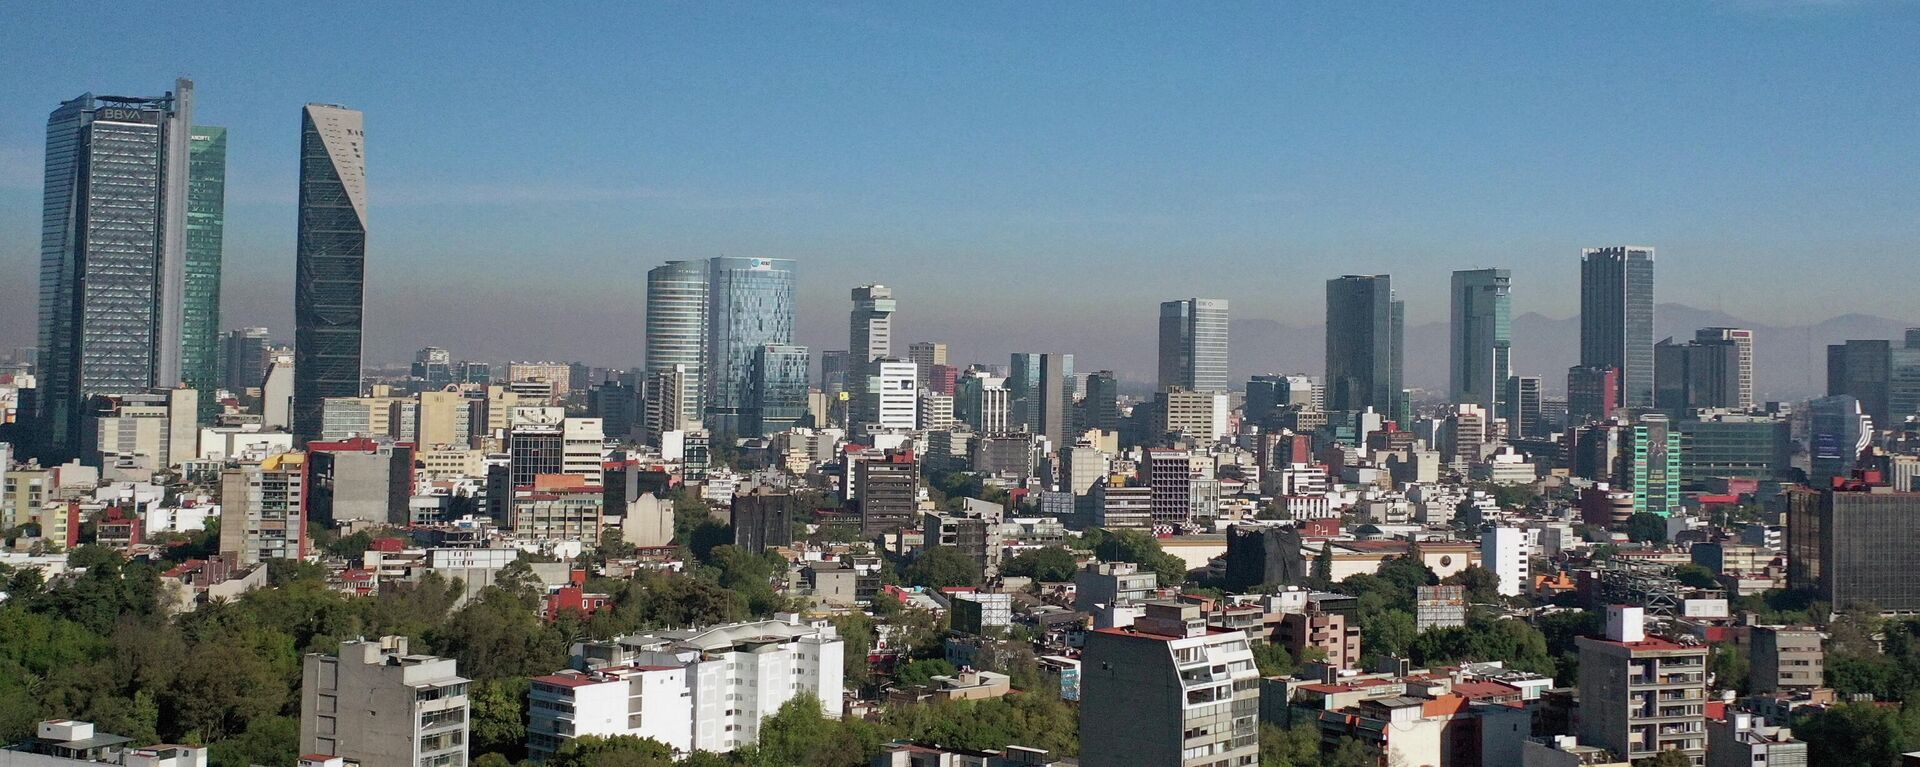 Ciudad de México vista desde el aire - Sputnik Mundo, 1920, 08.05.2021